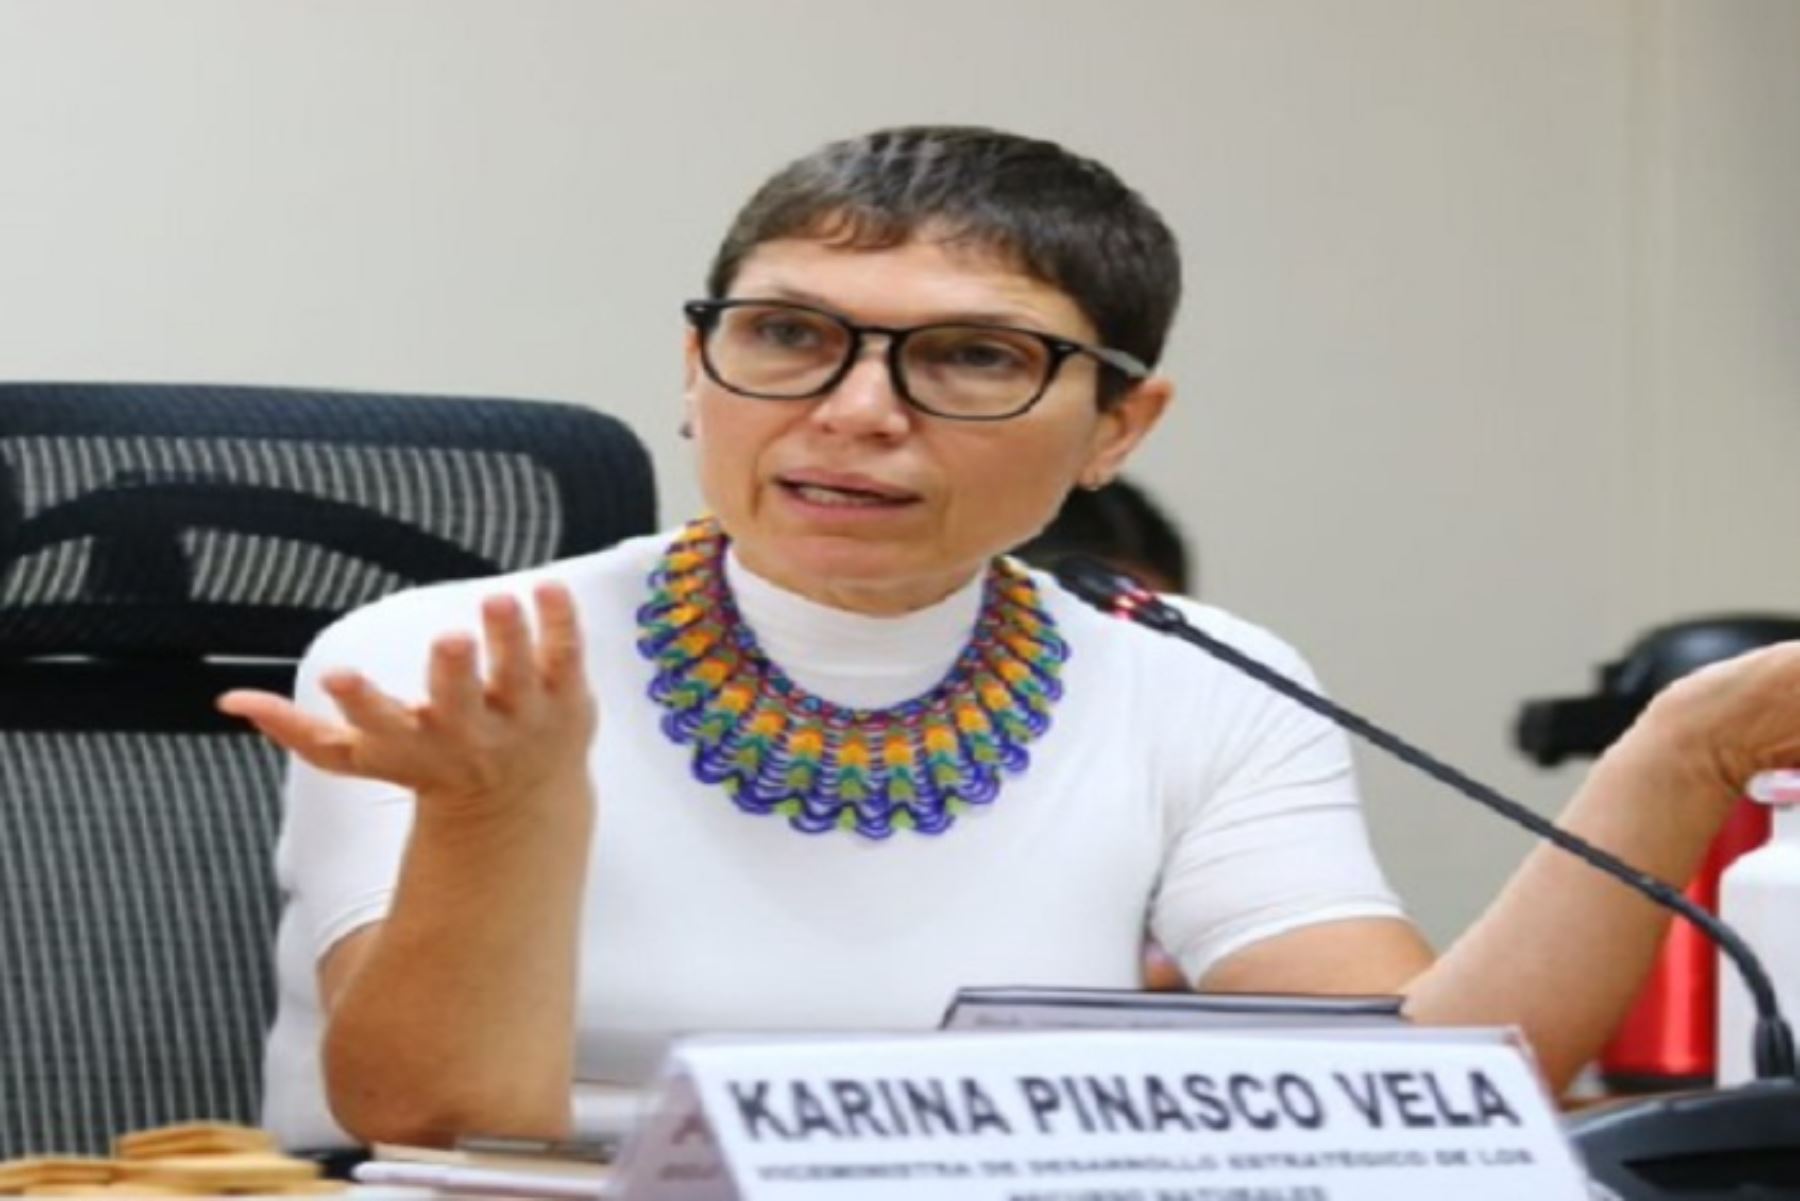 La exviceministra Karina Pinasco Vela habría beneficiado a la ONG Amazónicos por la Amazonía. Foto: Internet/Medios